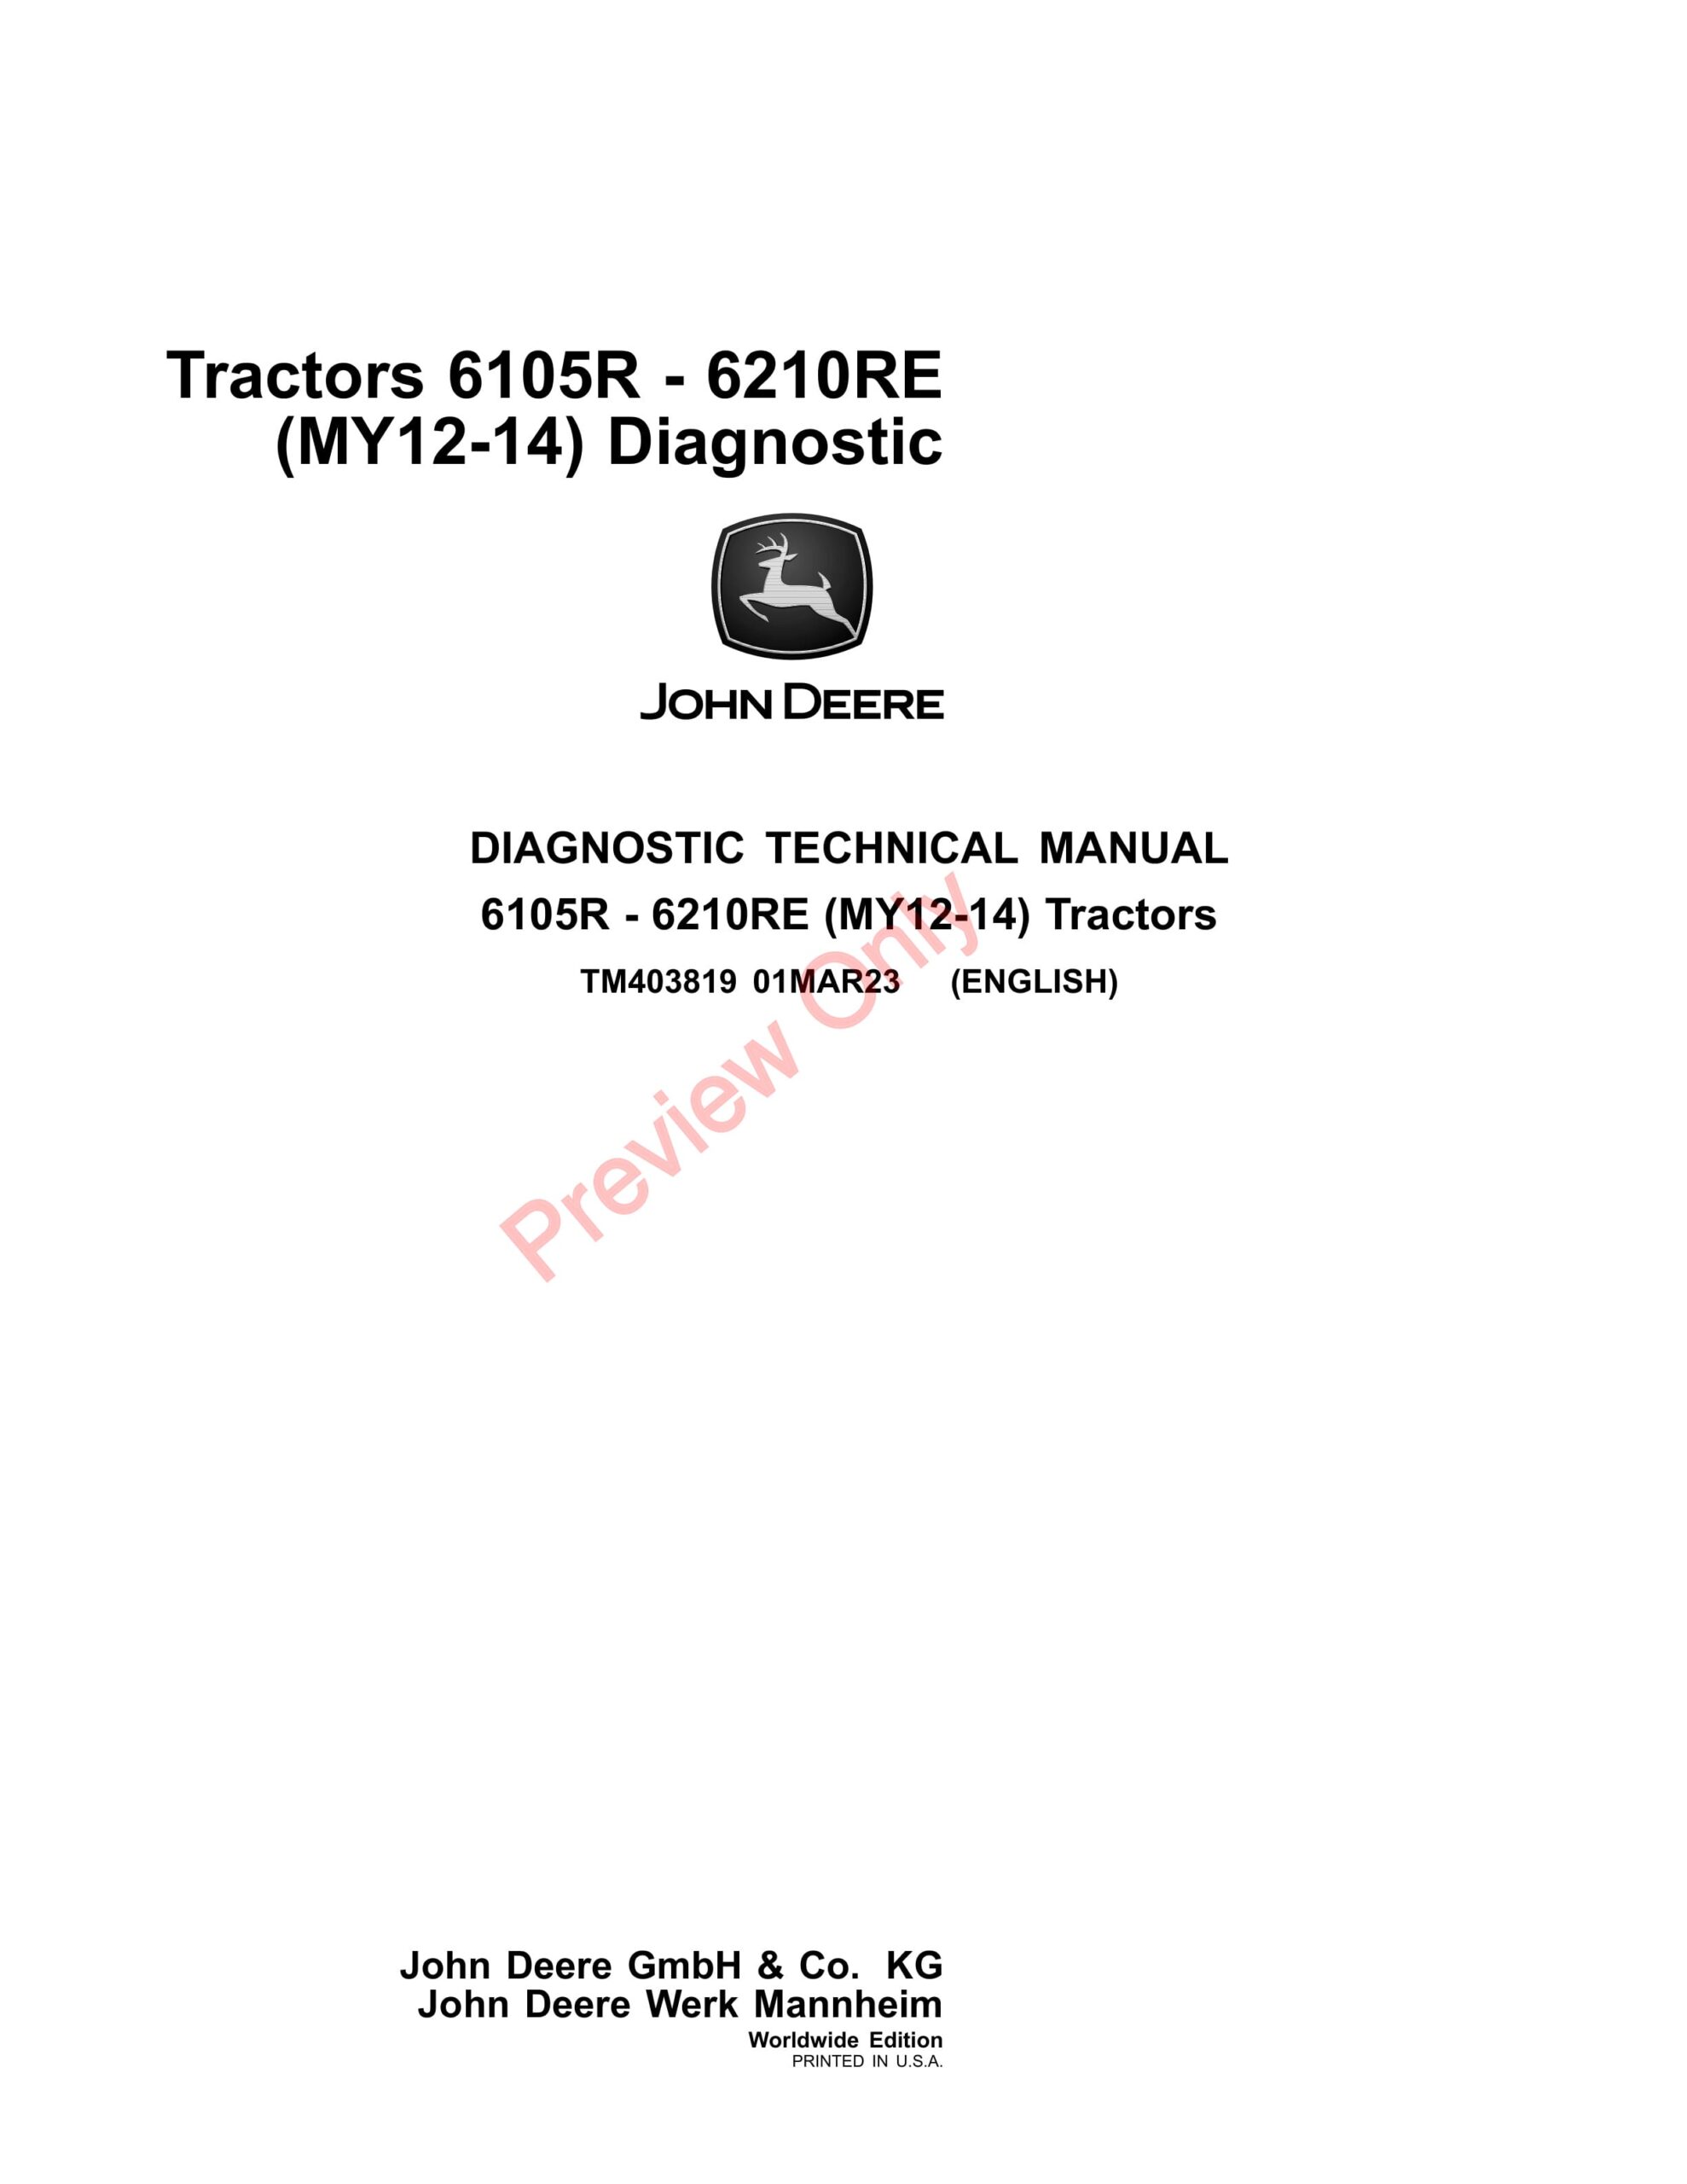 John Deere Tractors 6105R – 6210RE (MY12-14) Diagnostic Technical Manual TM403819 01MAR23-1